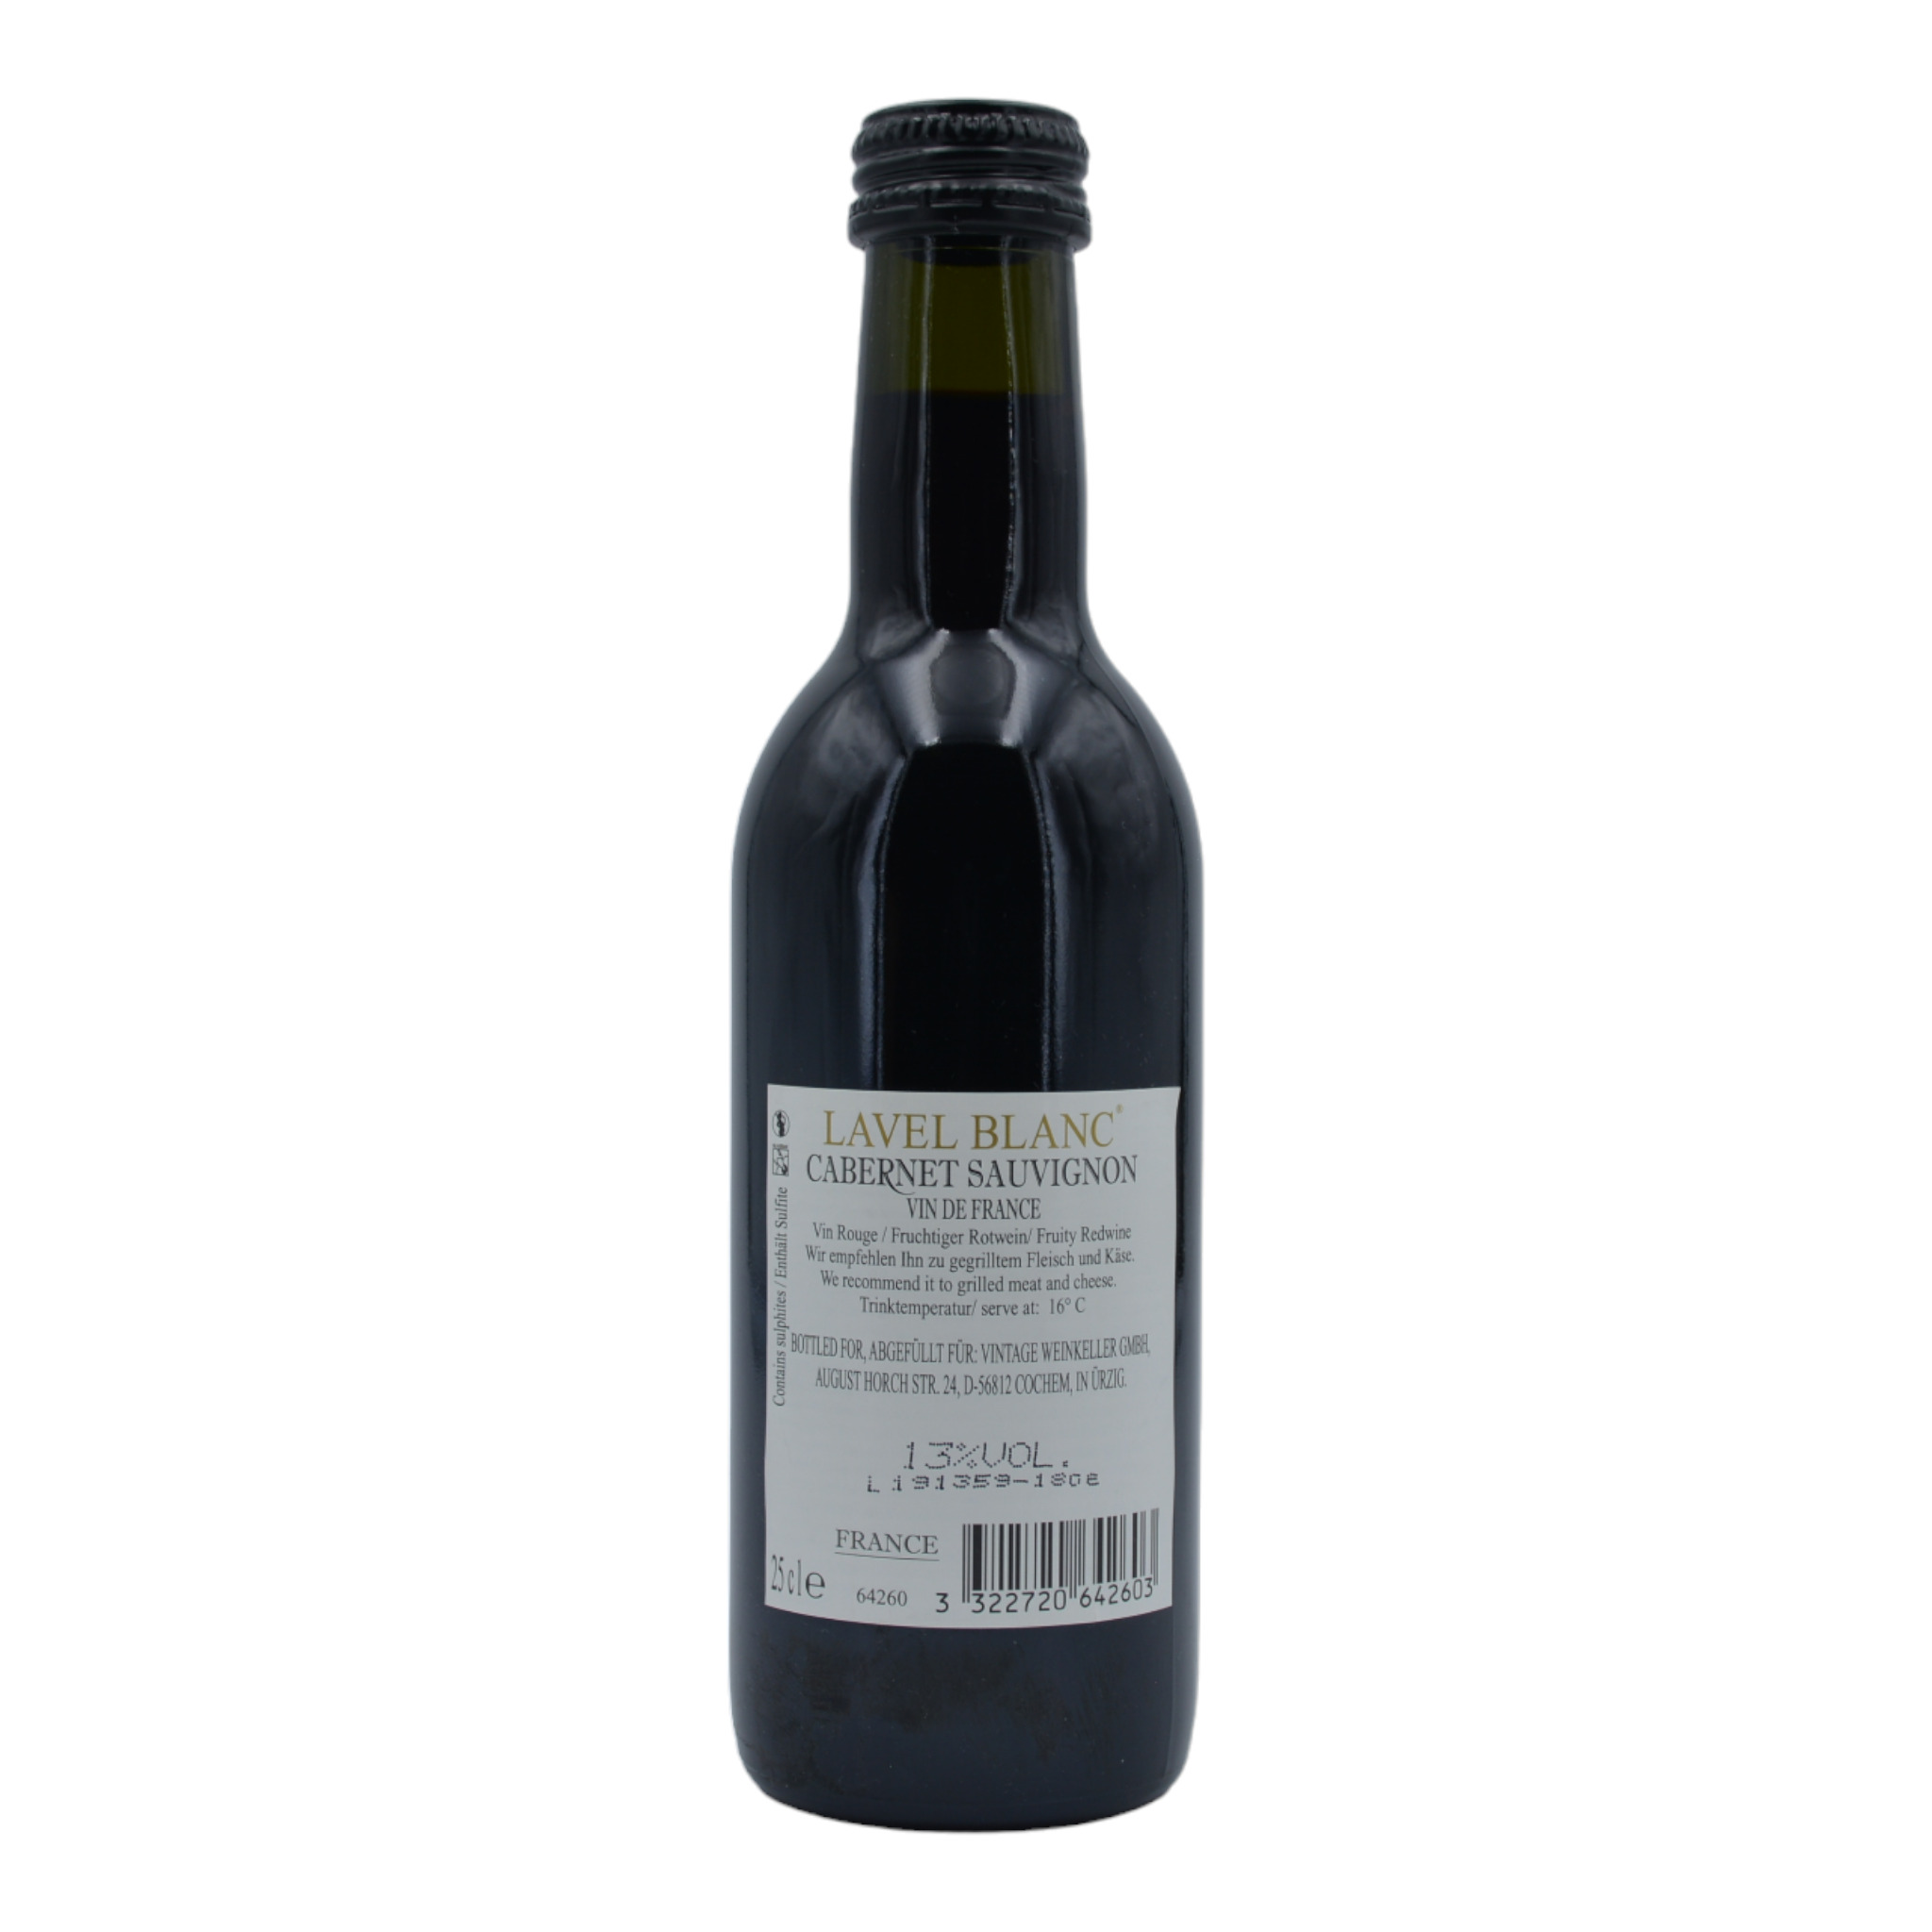 3322720642603 - Lavel Blanc Cabernet Sauvignon Vin Selectionne Vintage b